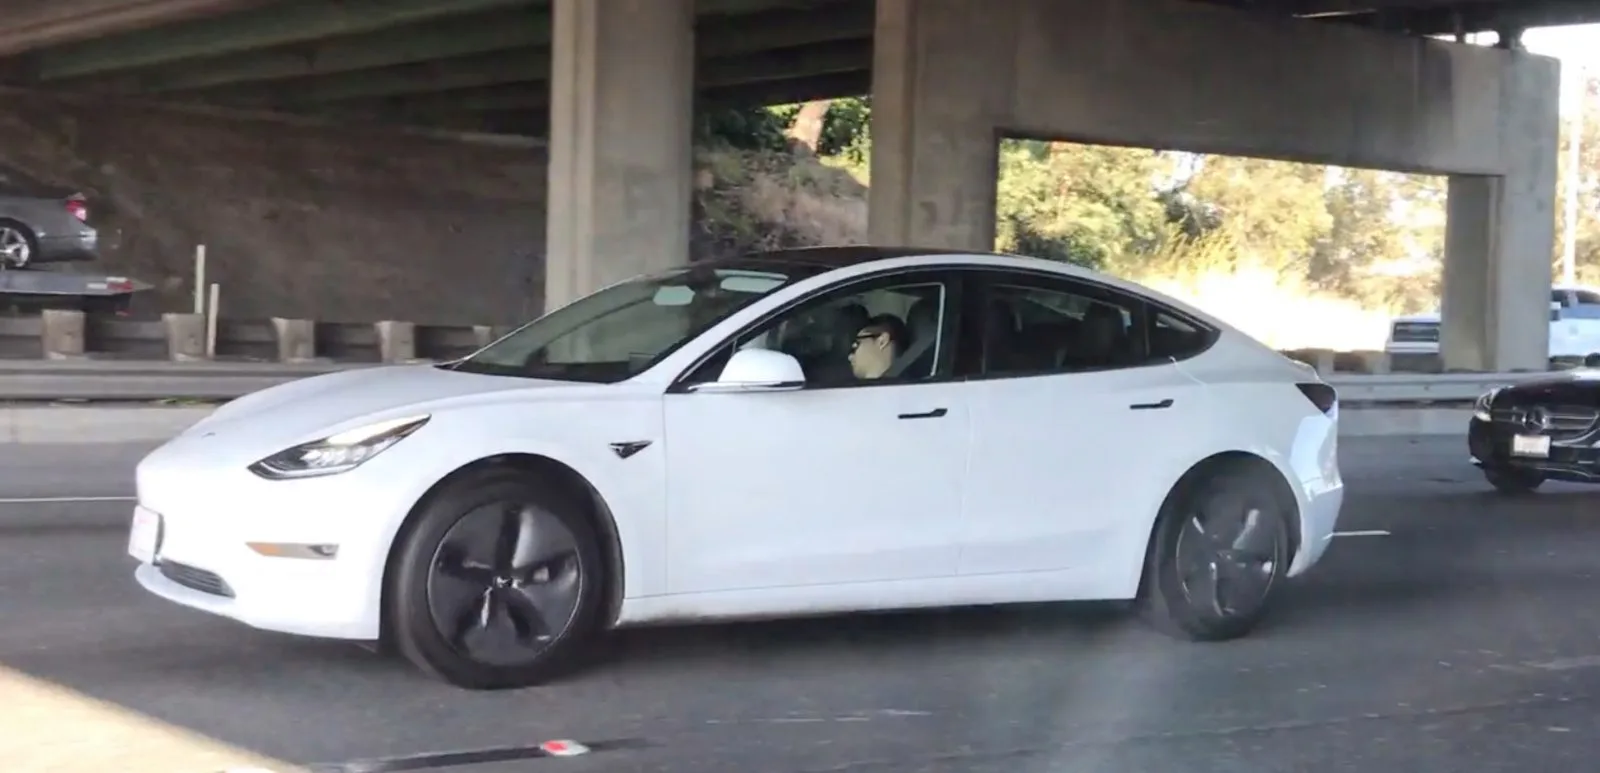 Driver per dormire Tesla Modello 3 catturato per la terza volta e punito